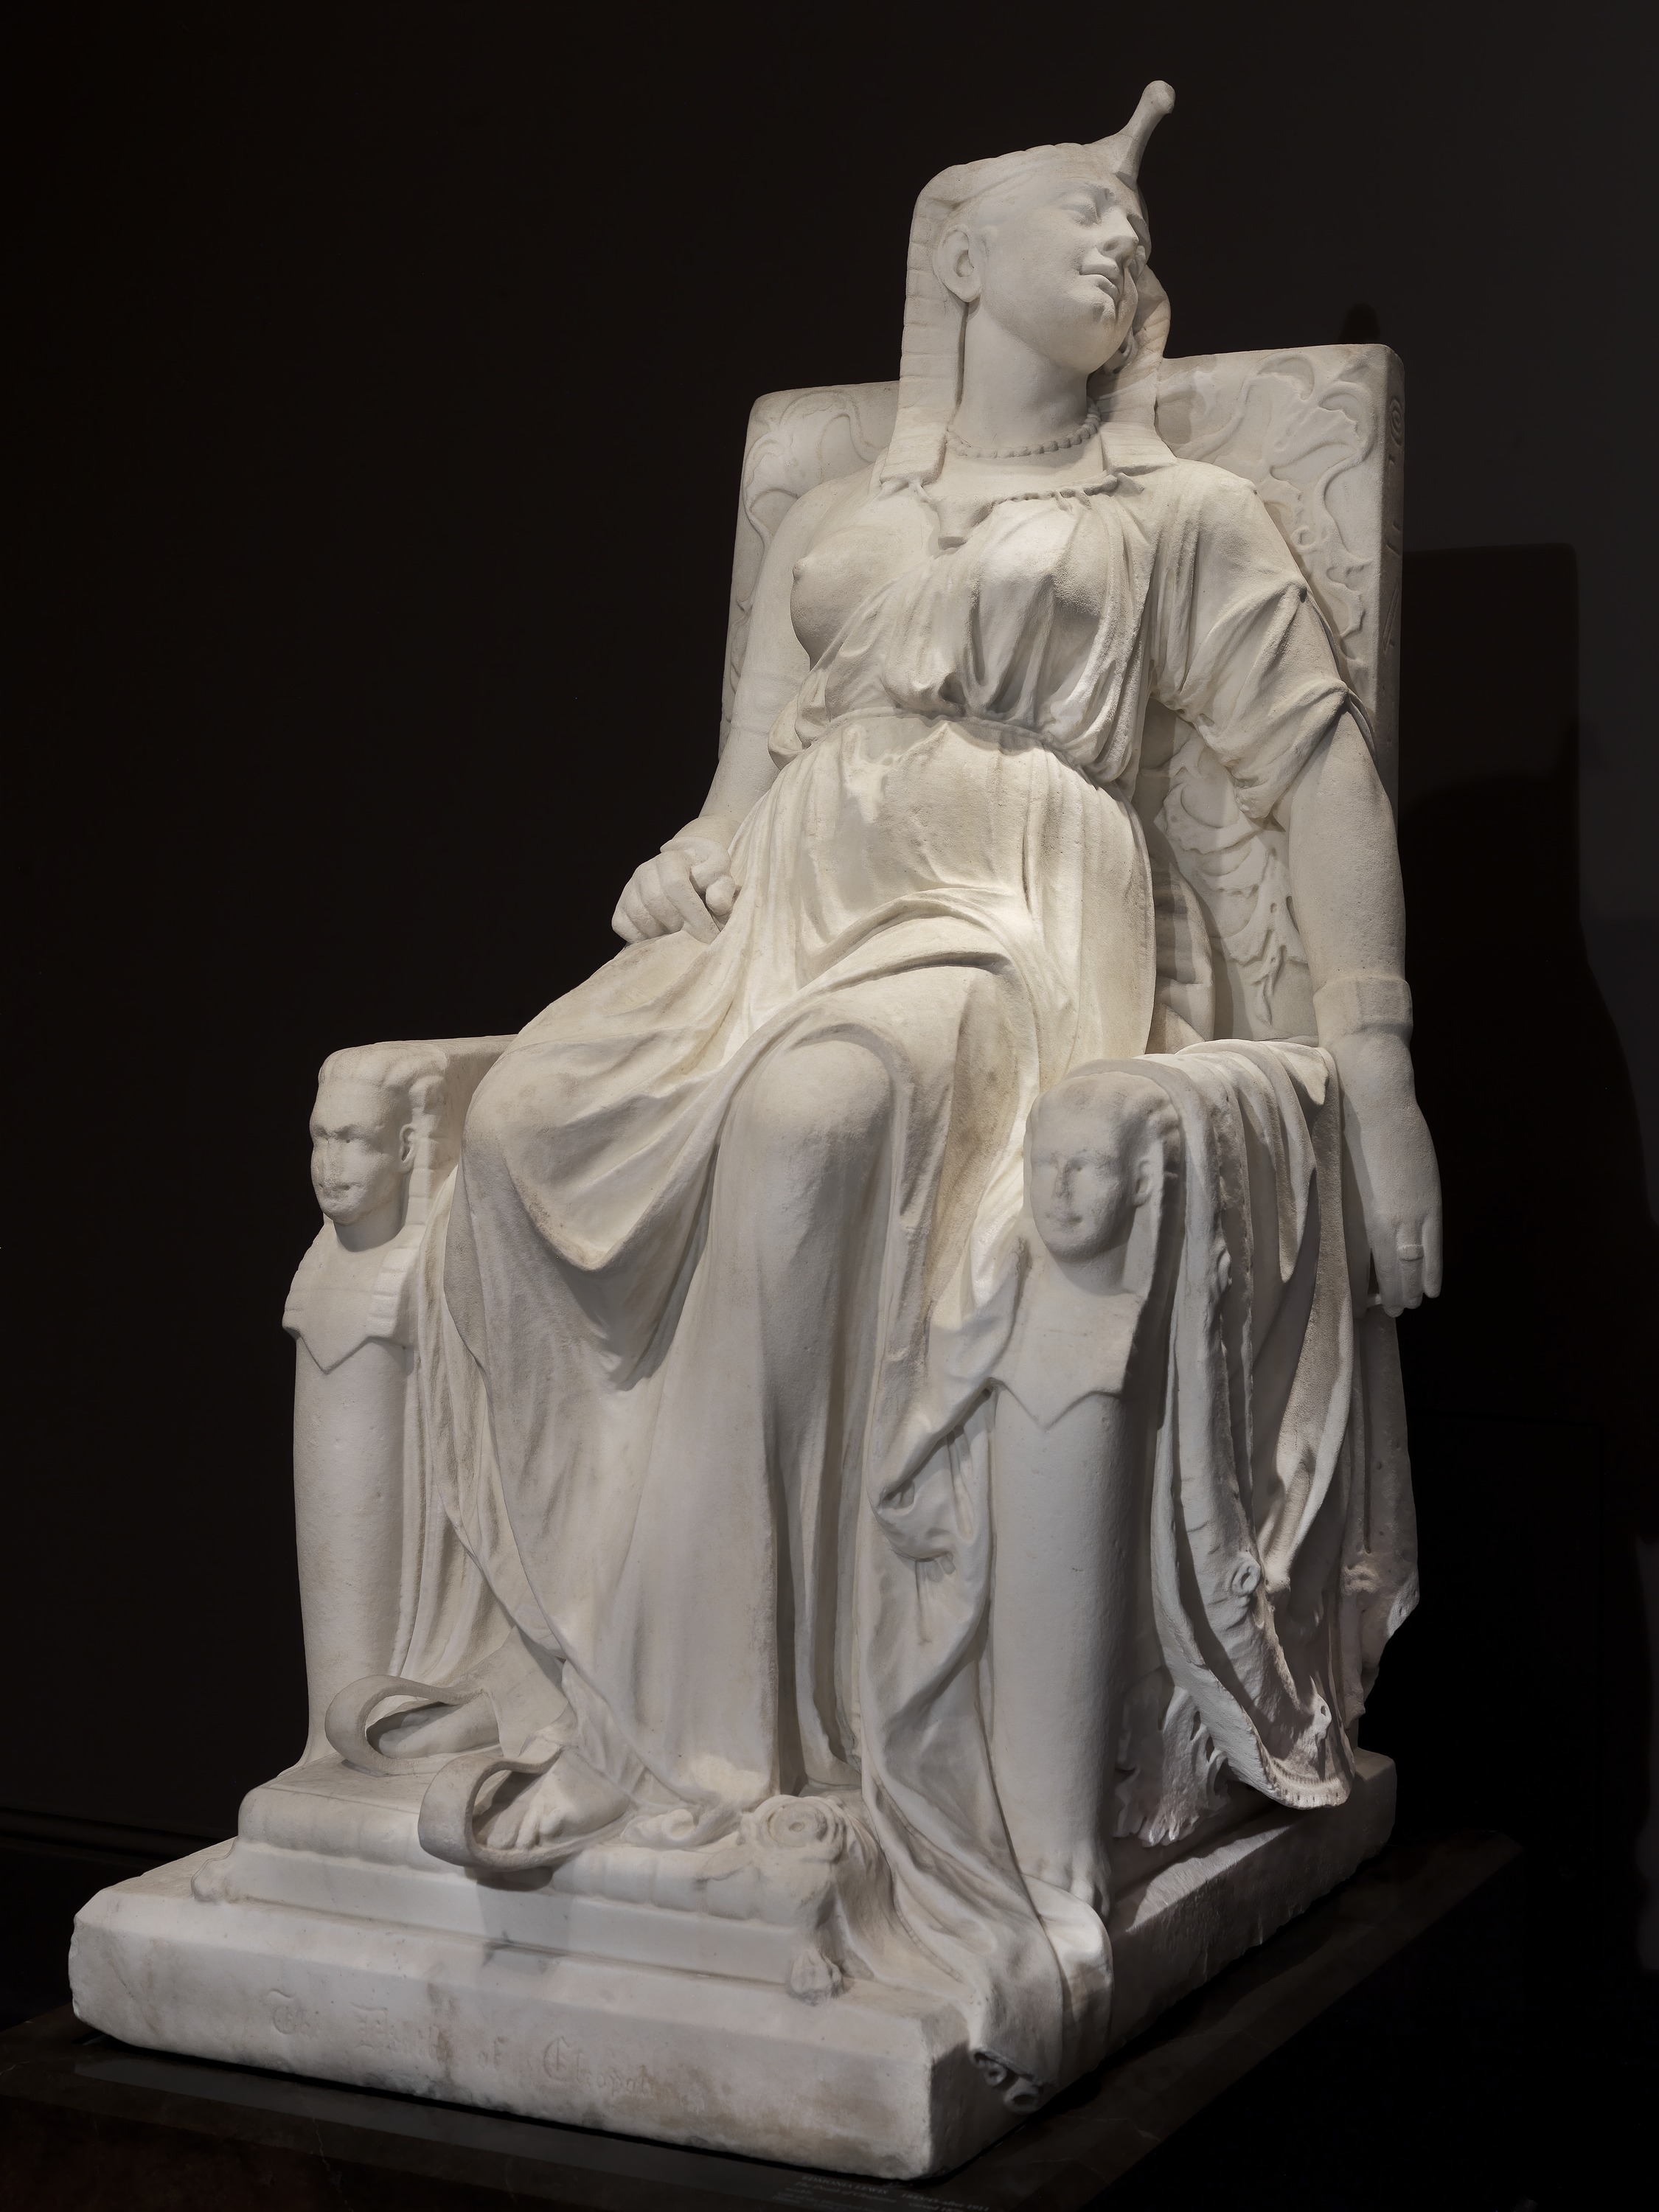 克利奥帕特拉之死 by 埃德蒙尼娅 刘易斯 - 1876年 - 160.0 x 79.4 x 116.8厘米 